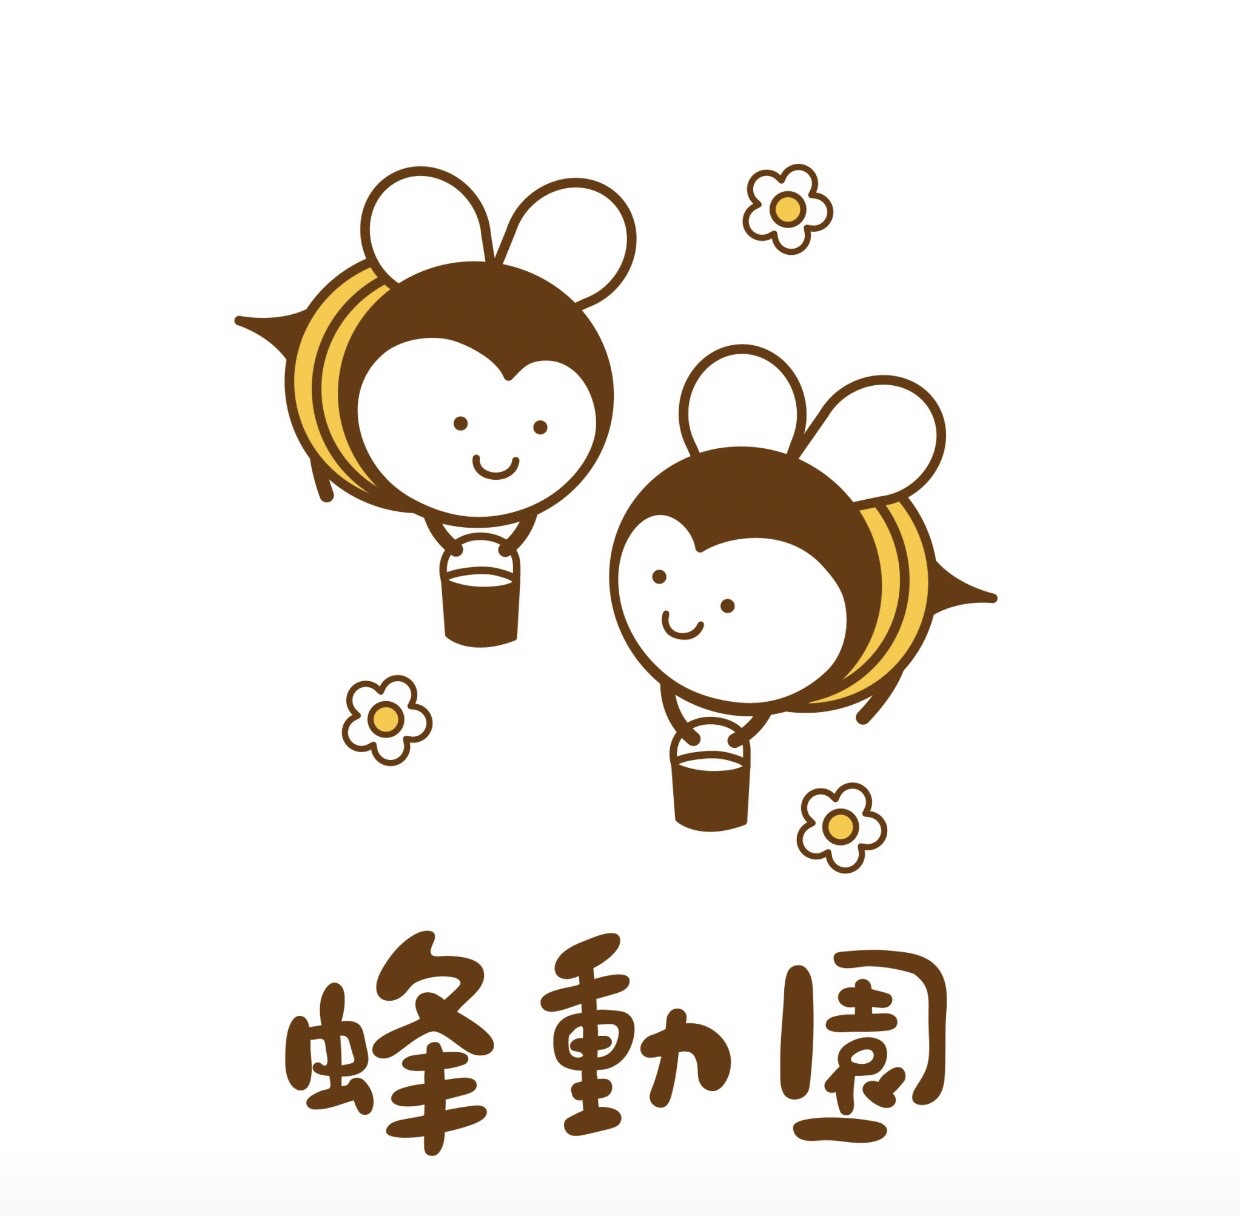 順應自然，我們就是自然的一部分～<br />蜂動園養蜂場成立於1979年，台灣在地自產自銷的小農品牌。養蜂生活就像遊牧民族一樣逐花而居，帶來專屬於台灣這塊土地上甜美的蜂蜜和蜂產品。多年的遊牧生活，結識了不少好友，體驗著台灣各地的風土民情，希望將產品推廣給更多人知道，一起享用並珍惜台灣這塊土地特有的資源。<br />一年四季隨著節氣變化，分別在春季推出來自高雄大樹區的荔枝蜂蜜、嘉義梅山區的龍眼蜂蜜，秋季則有來自嘉義梅山區高山的茶花粉，另外還有蜂王乳等養生食品。<br /><br />只做自己會做的事，並盡力做到最好～<br />蜂產品皆為自產自銷，為了堅持品質，我們持續不斷的努力，多年來榮獲台灣國產龍眼蜂蜜評鑑特等獎、頭等獎的肯定，期許為台灣這塊土地，為我們的下一代，傳承一份最純粹，最實在，最天然的恩賜。除了盡力維護品質之外，希望藉由社群築構一個大家安心購物的平台，也請大家繼續支持台灣在地農產品。<br /><br />收集甜蜜，幸福傳遞～<br />如果這世界上有一種甜，會讓你忘記生活的苦，那就是蜂蜜！ <br />這是一份來自大地的恩賜，傳承了古老的養生智慧；希望品嚐過的人都能感受到養蜂人的用心，體驗到由養蜂人及蜜蜂們共同準備的神奇禮物，拾起小時候那份對世界充滿的好奇心。